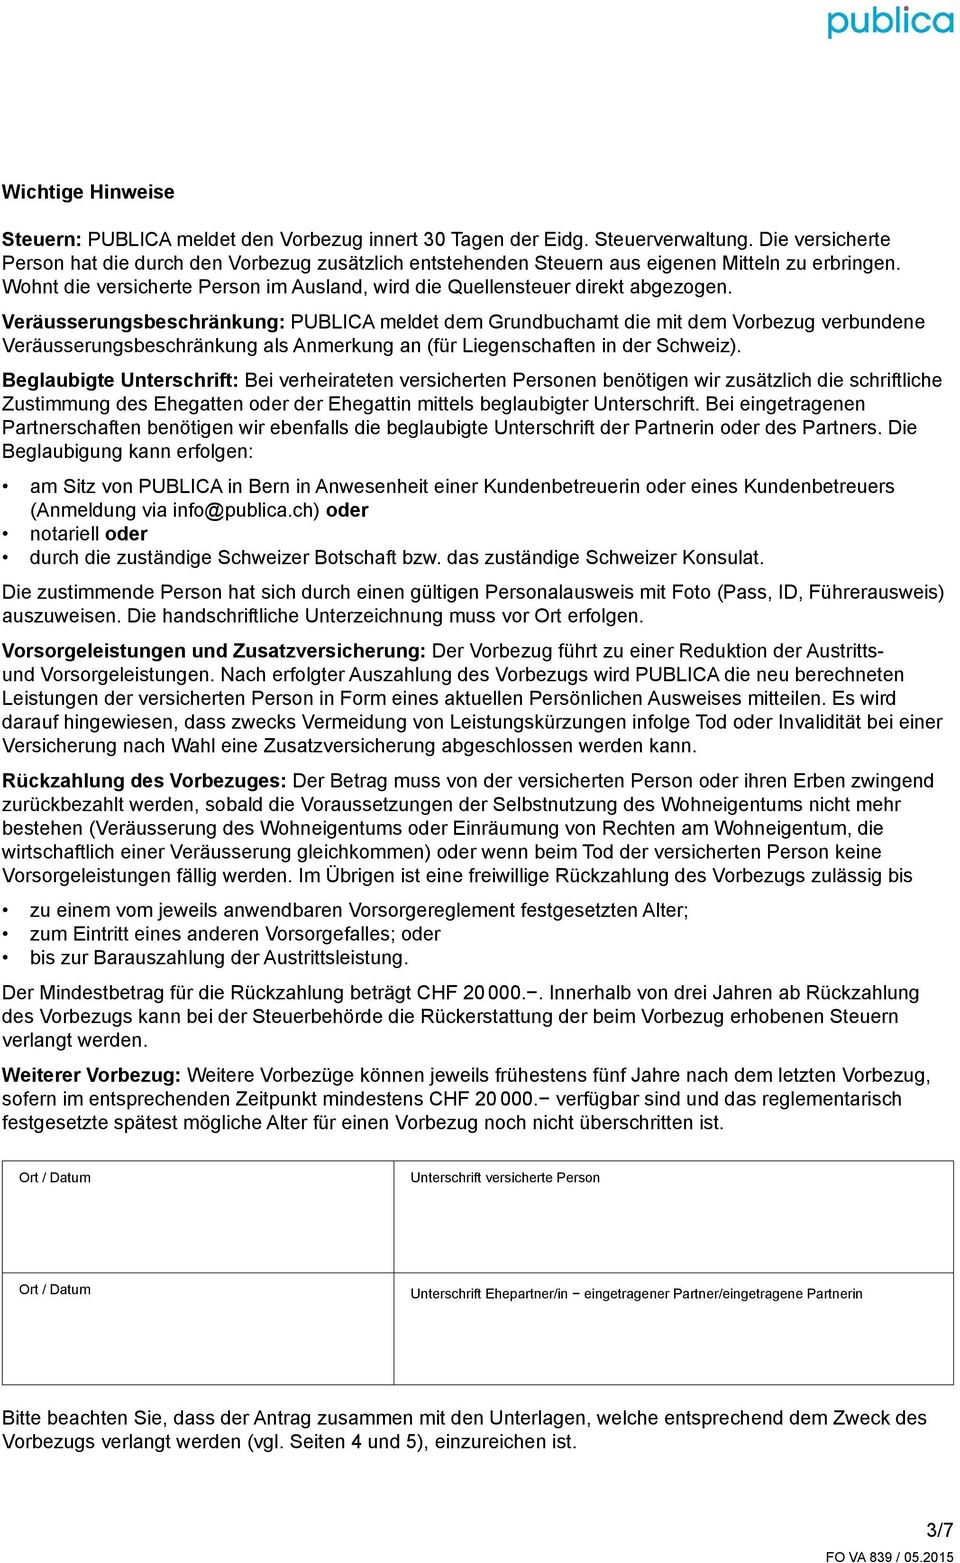 Veräusserungsbeschränkung: PUBLICA meldet dem Grundbuchamt die mit dem Vorbezug verbundene Veräusserungsbeschränkung als Anmerkung an (für Liegenschaften in der Schweiz).